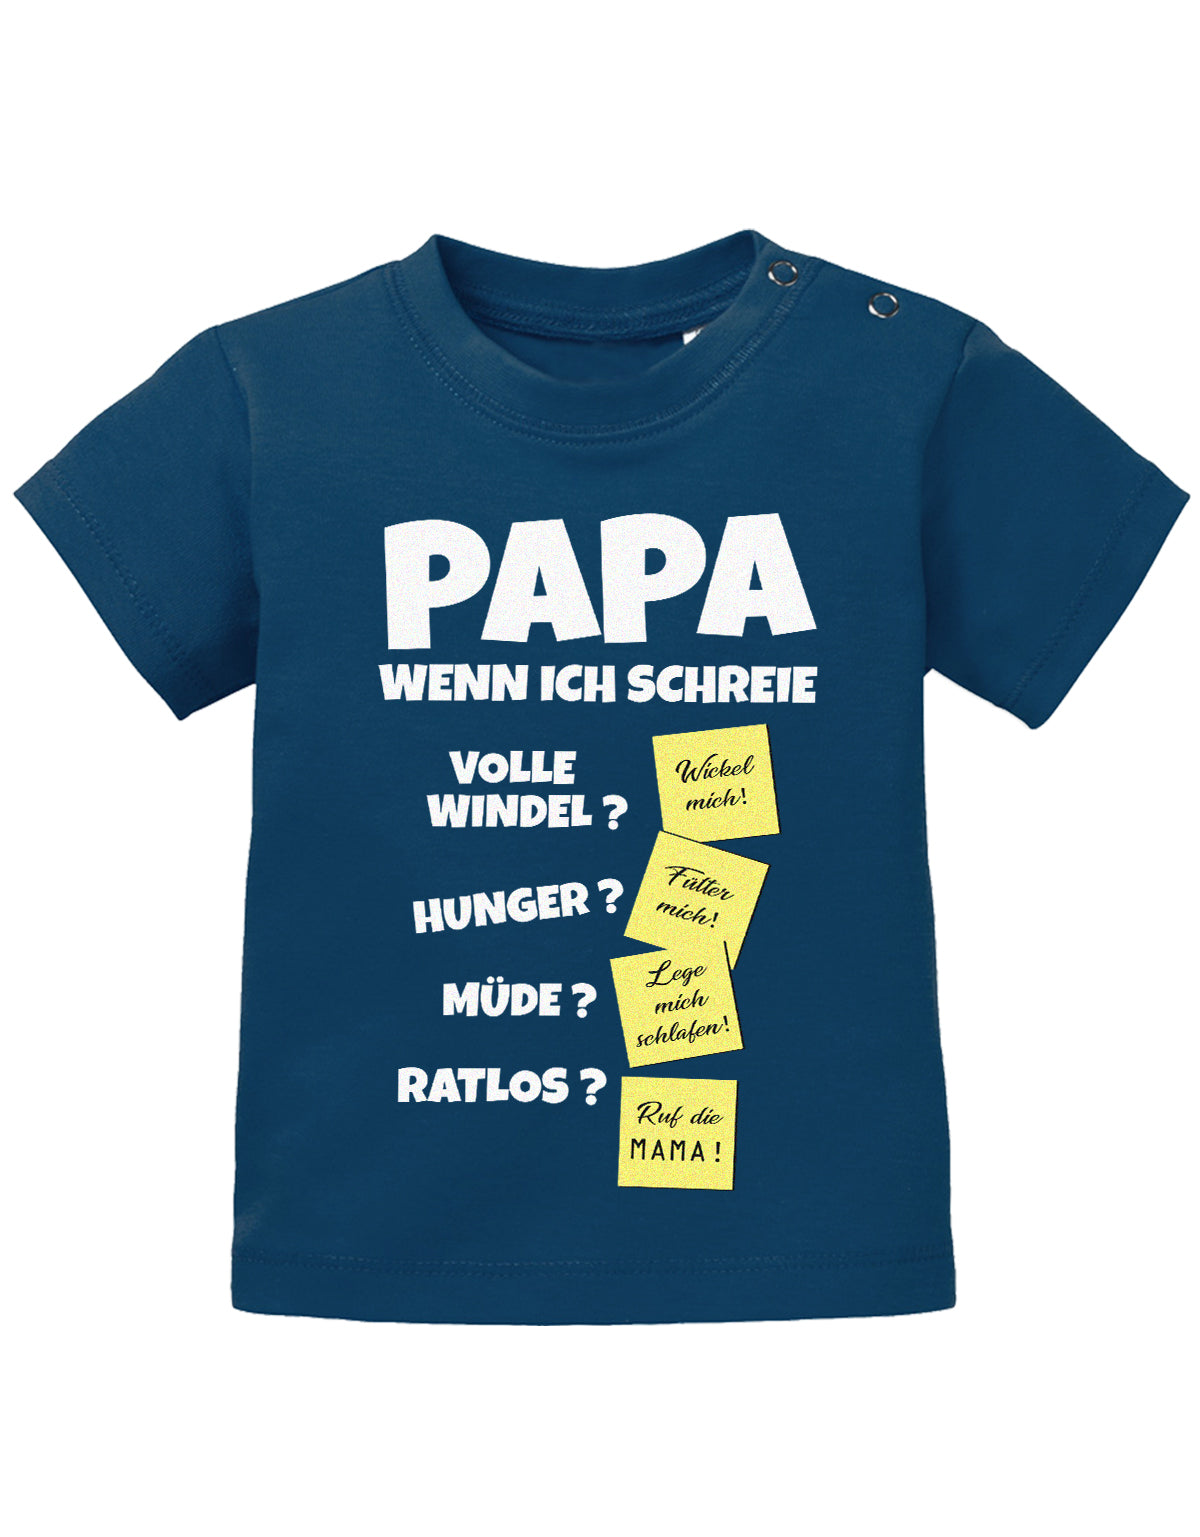 Lustiges süßes Sprüche Baby Shirt Papa wenn ich schreie - Notizen Lösungen. Navy